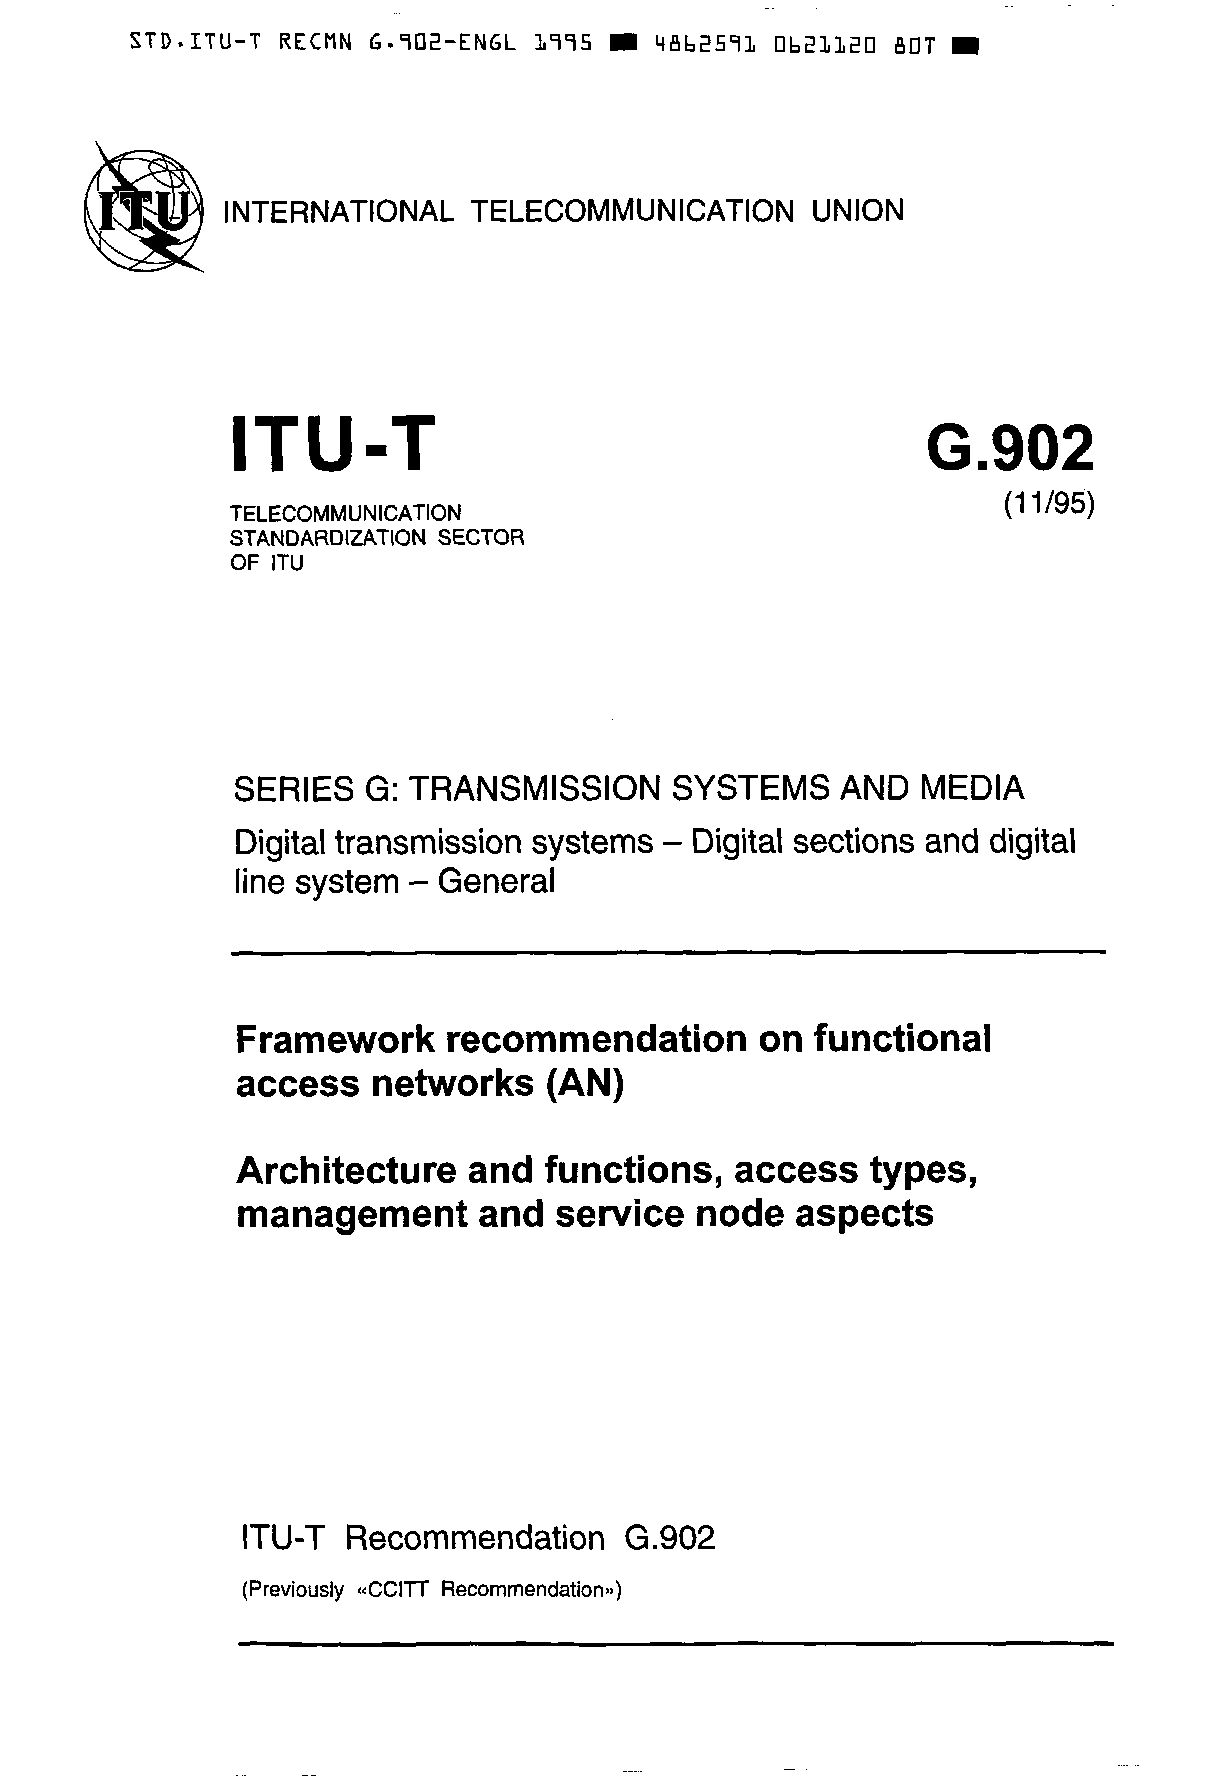 ITU-T G.902-1995